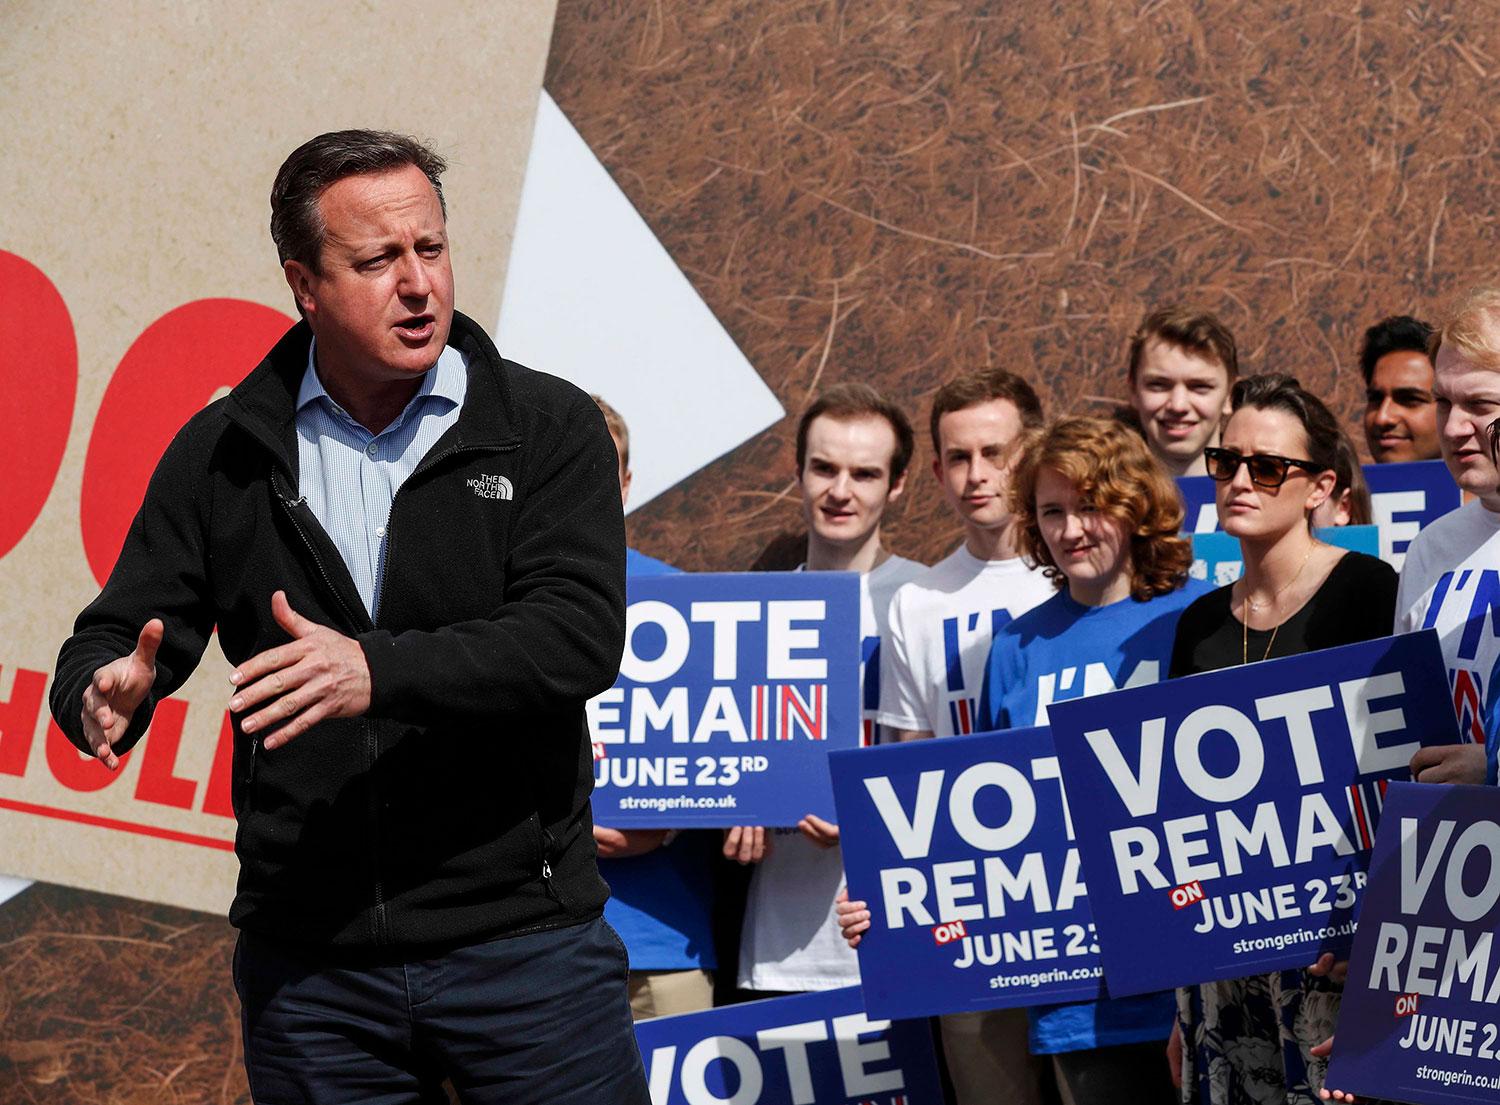 14. máj 2016 Witney, Veľká Británia: Bývalý britský premiér David Cameron najskôr vyhlásil referendum o vystúpení krajiny z Európskej únie a následne začal robiť kampaň, kde ľudí presviedčal, že brexit by bol zlý. Po zverejnení výsledkov referenda David Cameron rezignoval.